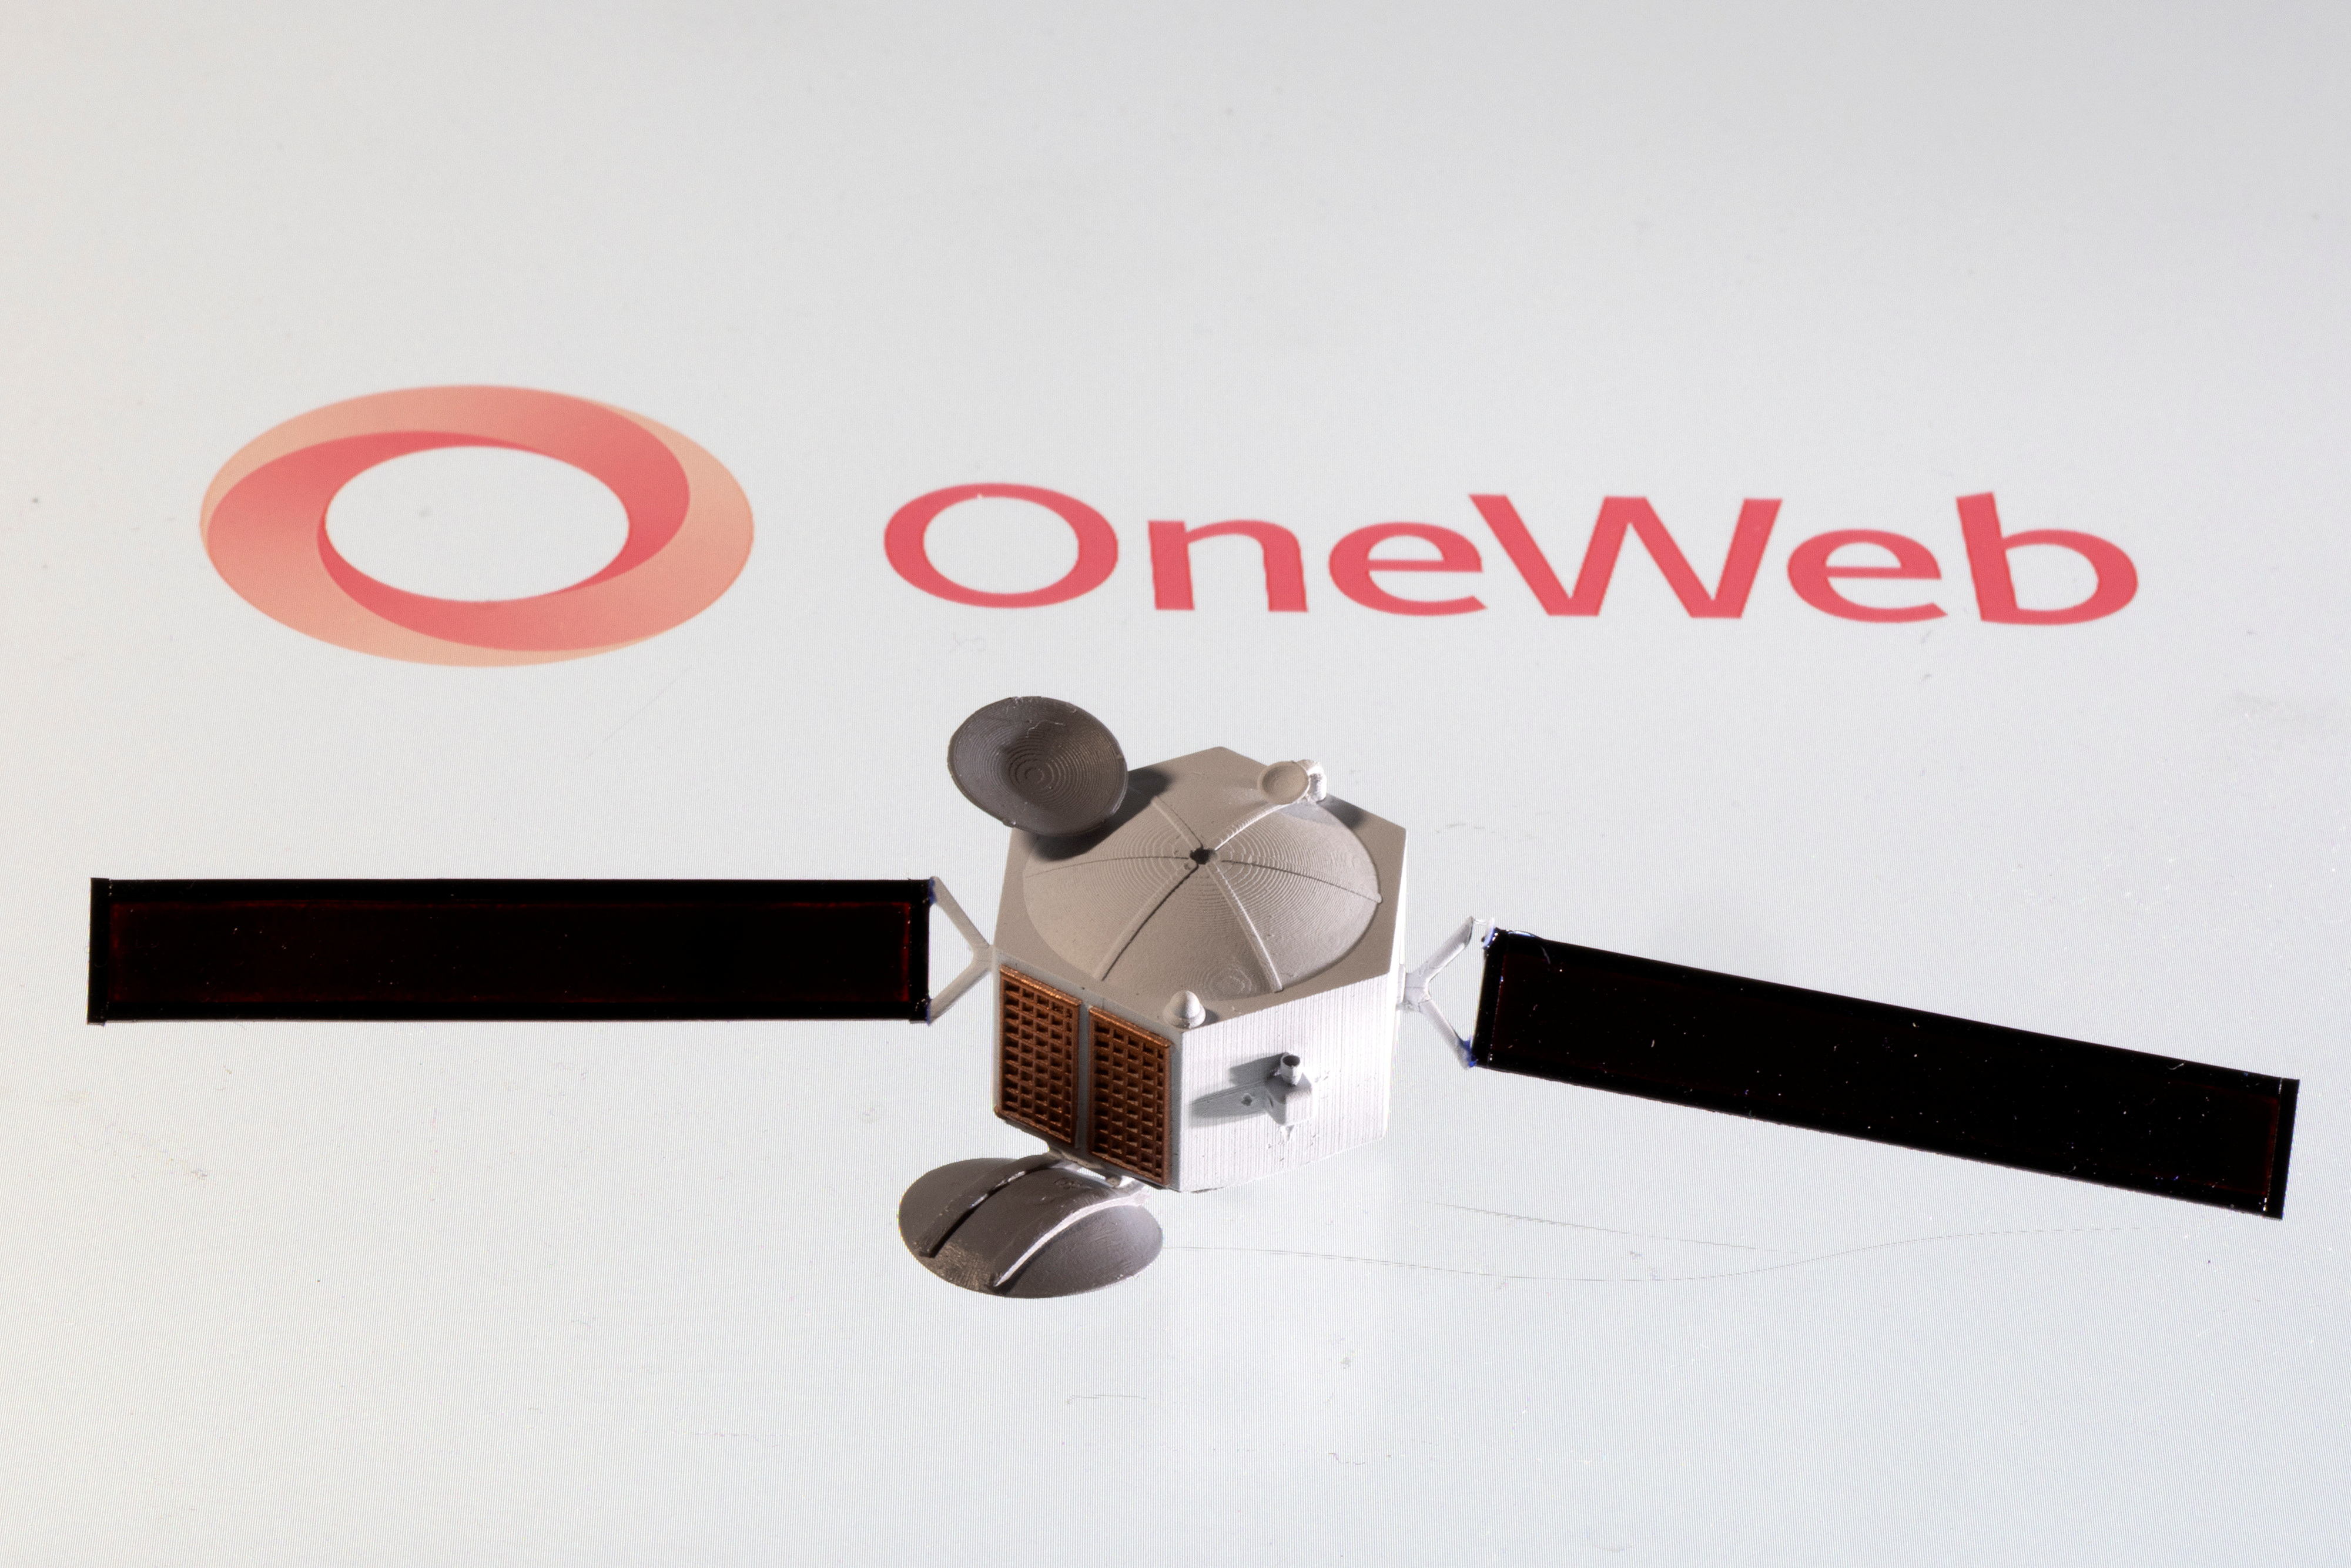 Illustration shows OneWeb logo and satellite model